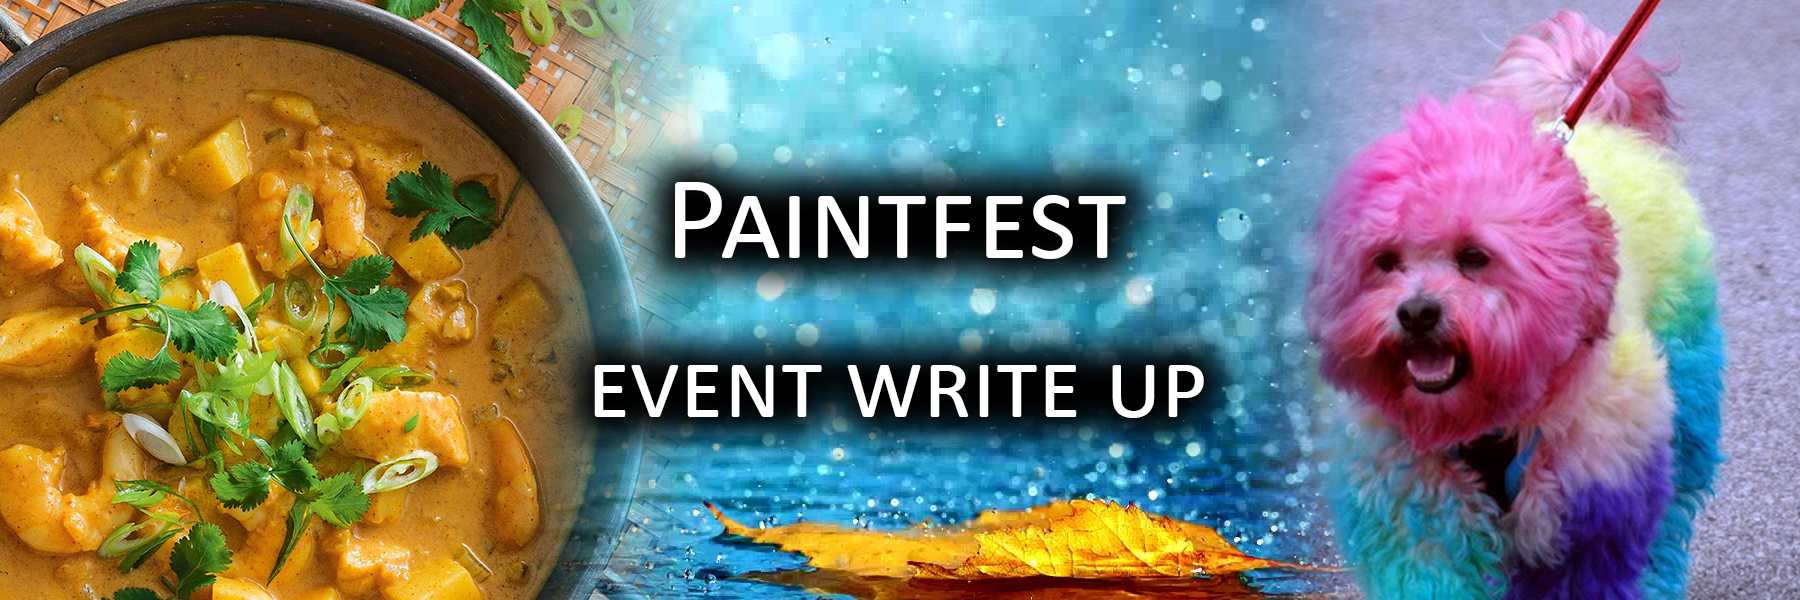 Paintfest Event Writeup